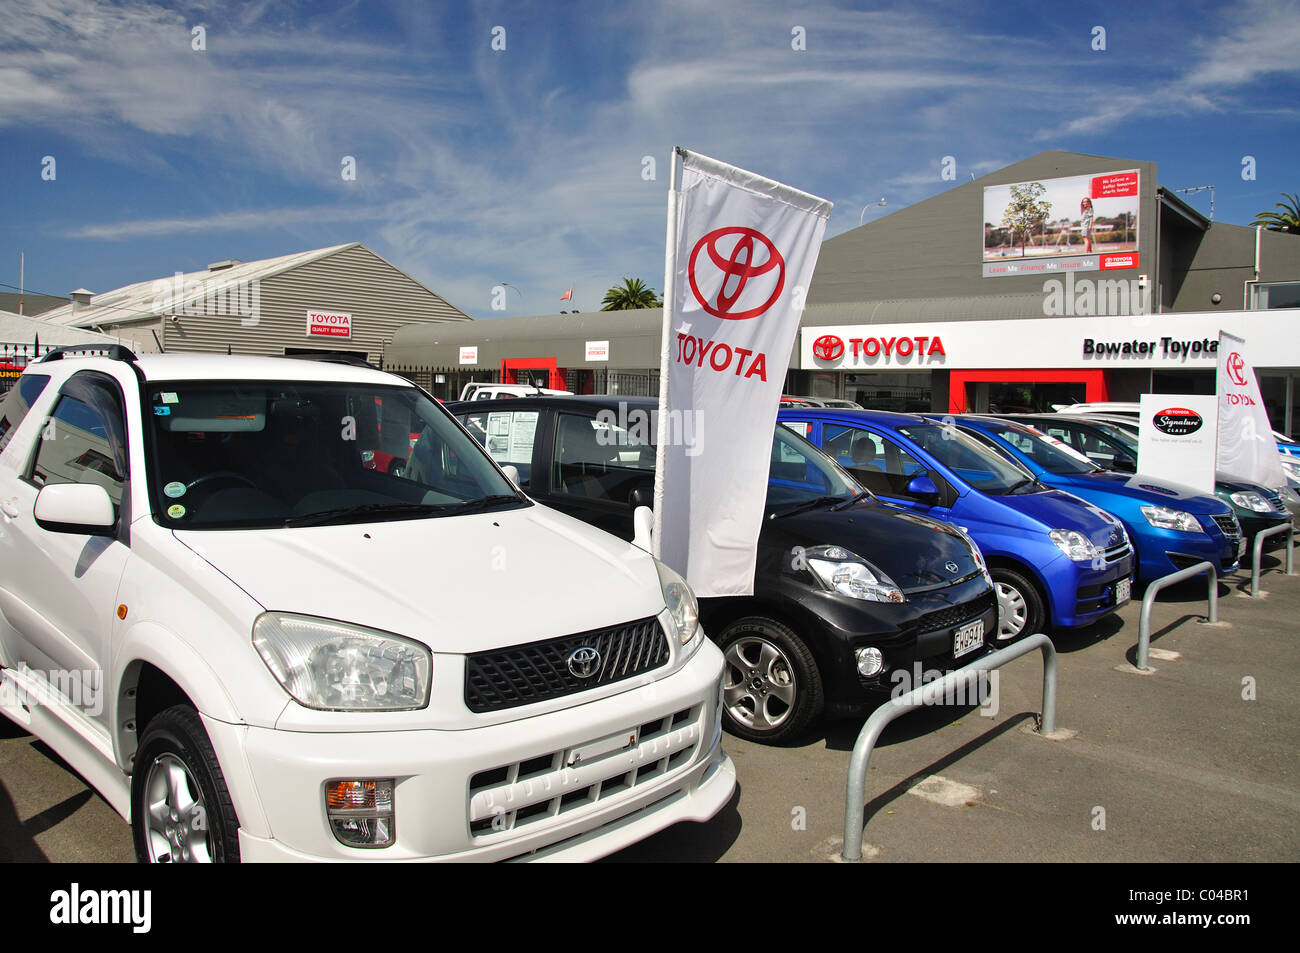 Concessionnaires de voitures Toyota Bowater, Rutherford Street, Nelson, Nelson, île du Sud, Nouvelle-Zélande Banque D'Images